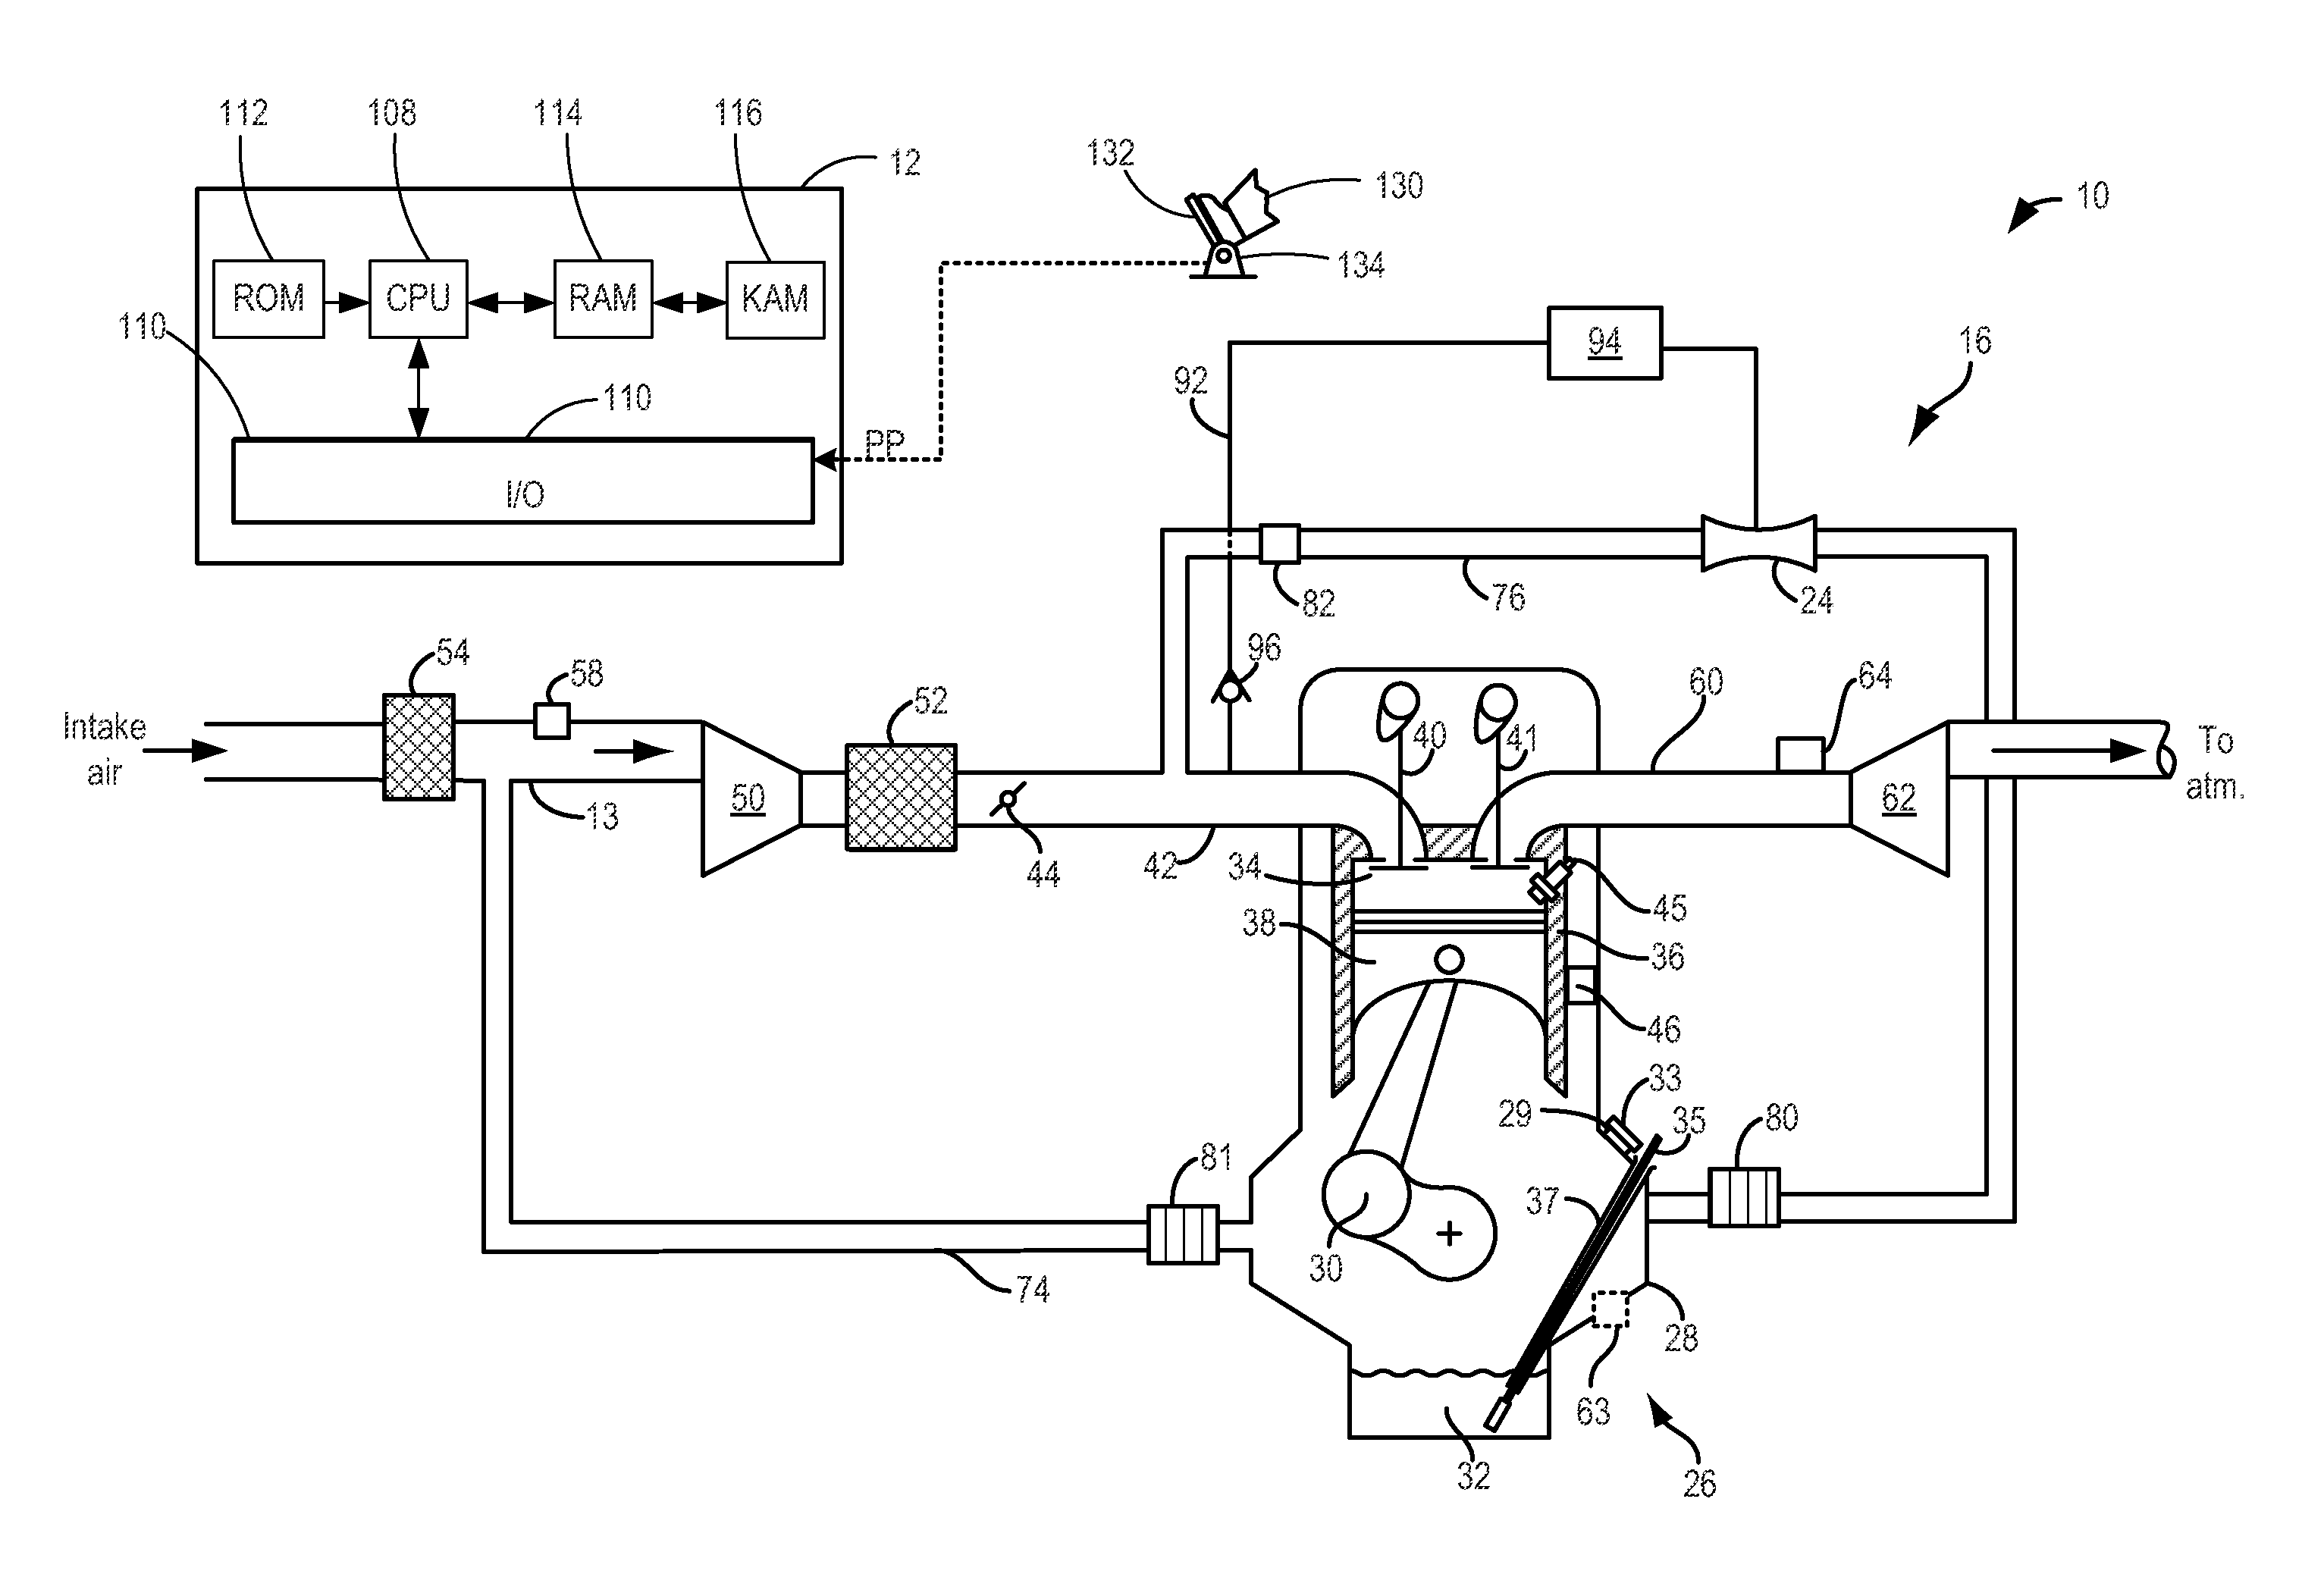 Aspirator for crankcase ventilation and vacuum generation